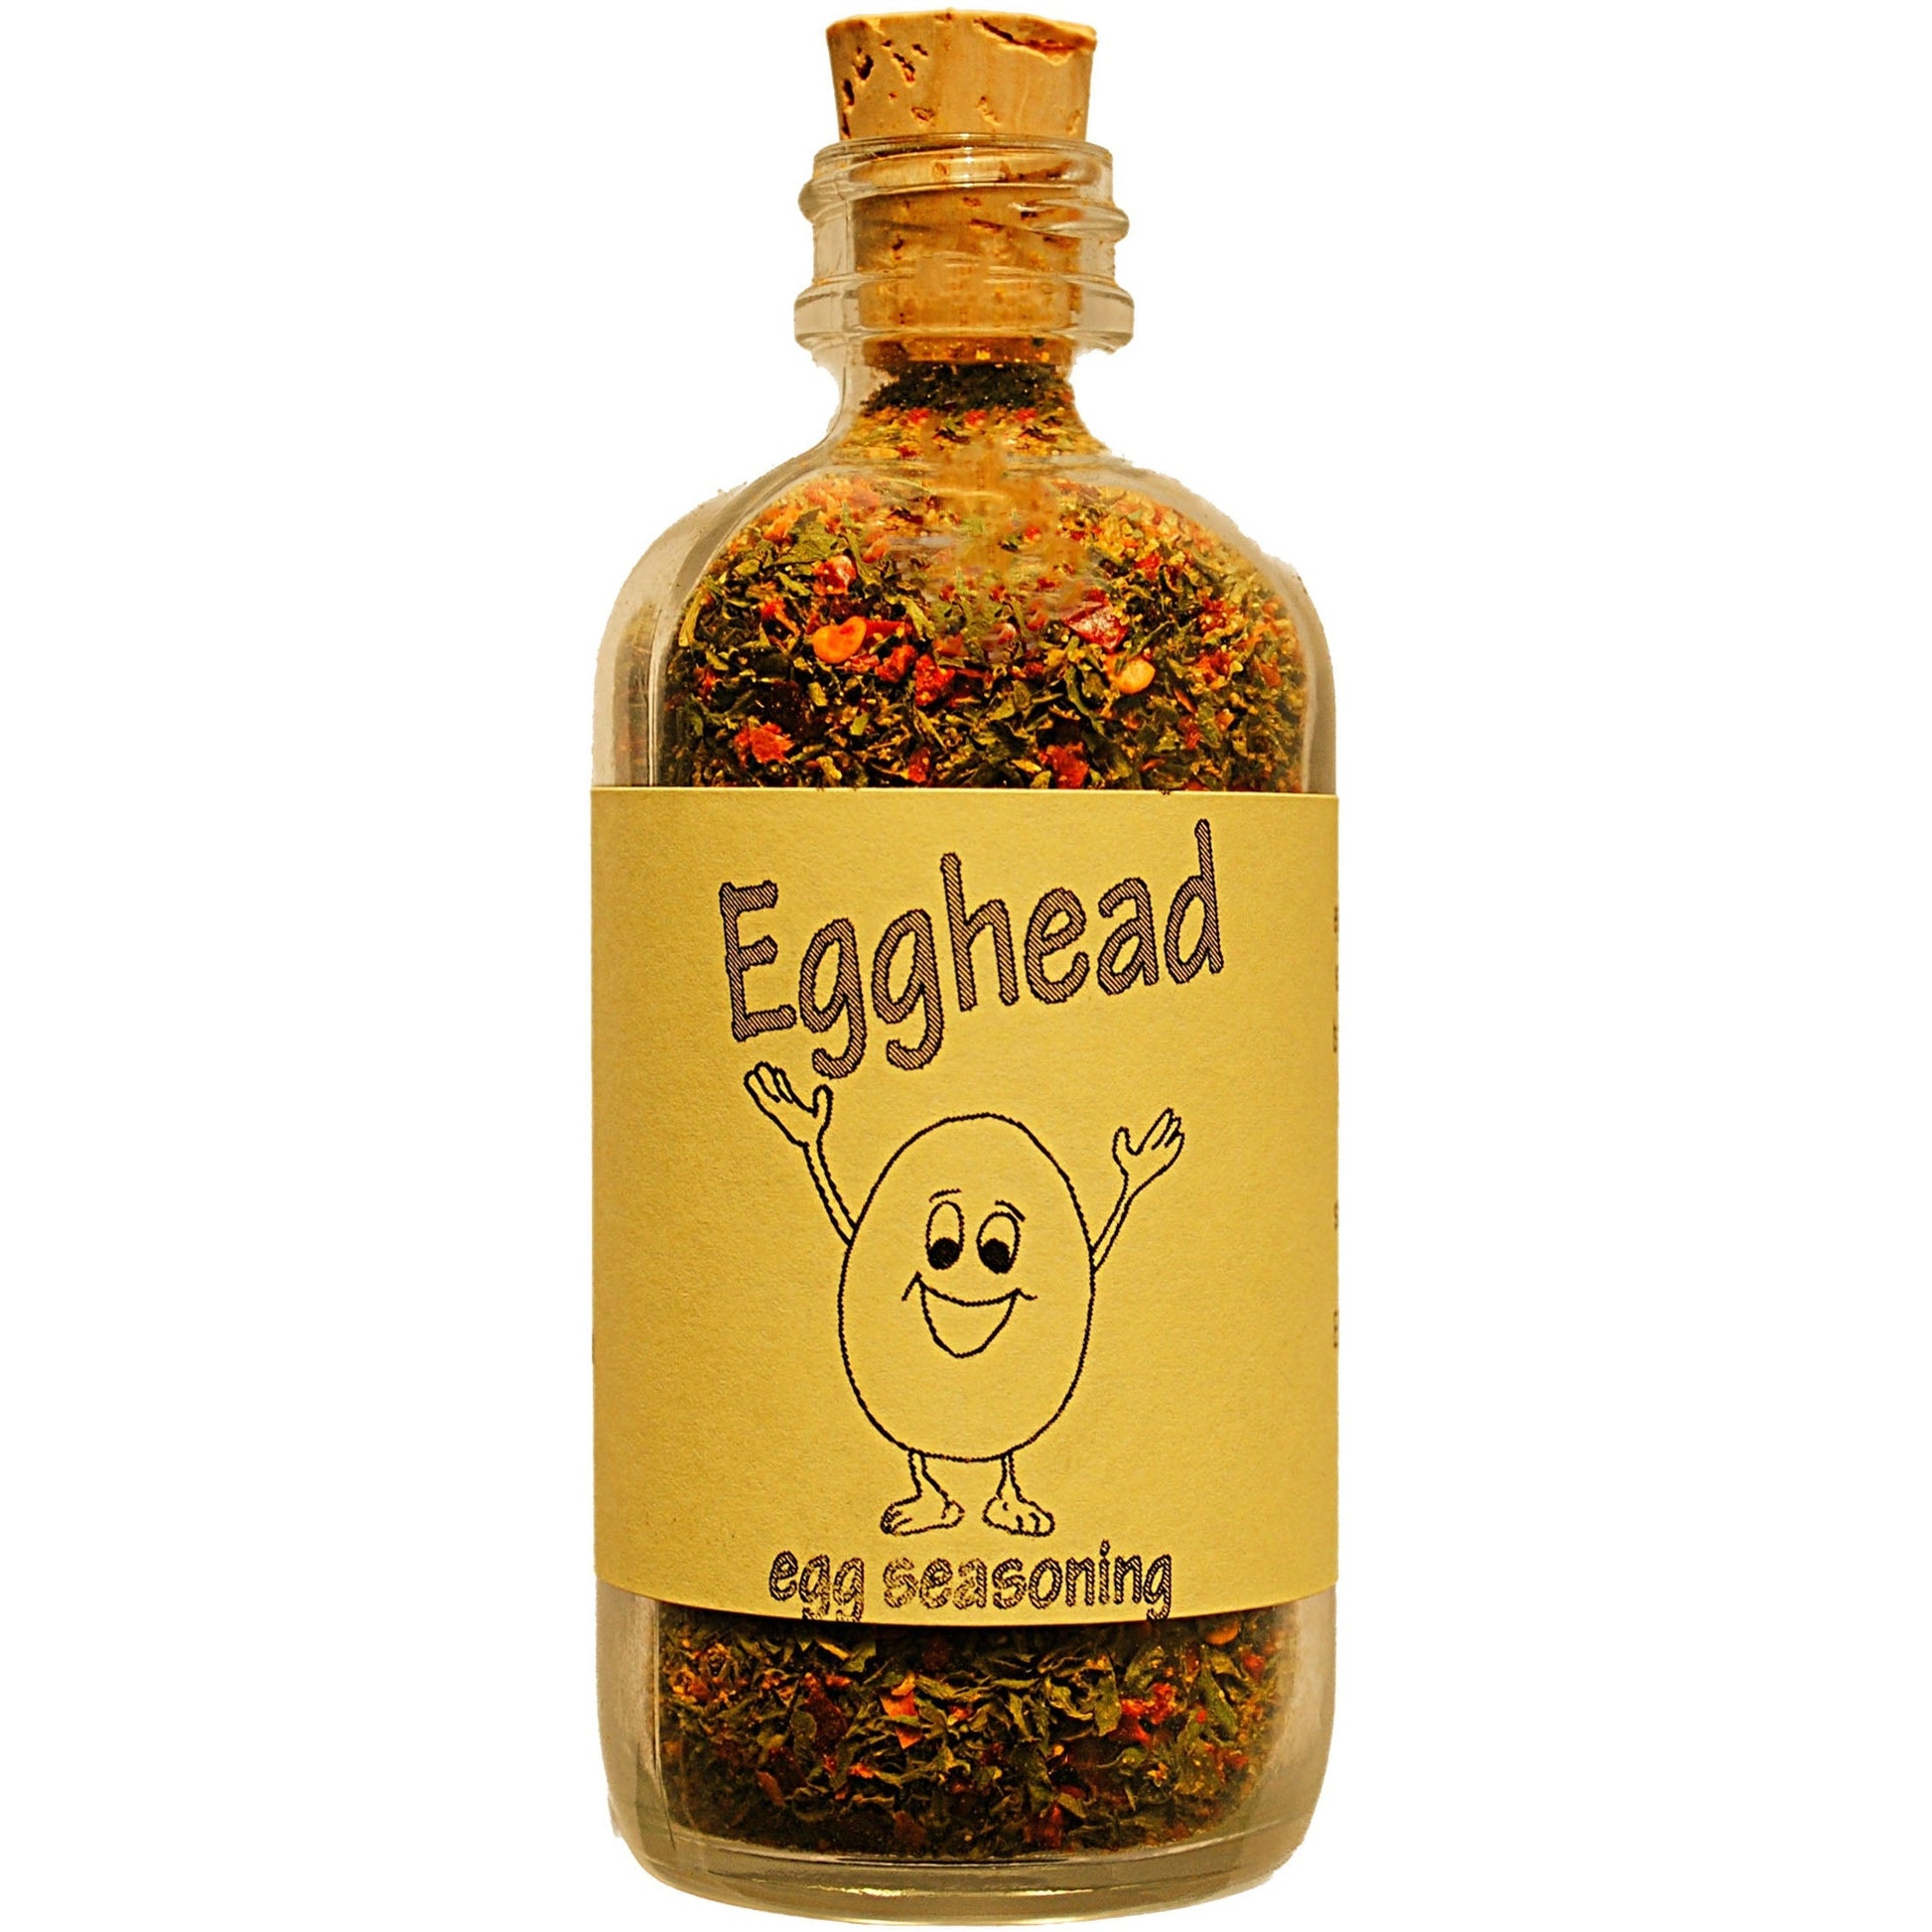 Egghead Egg Seasoning 2.4 oz Glass Bottle - Unique Flavors